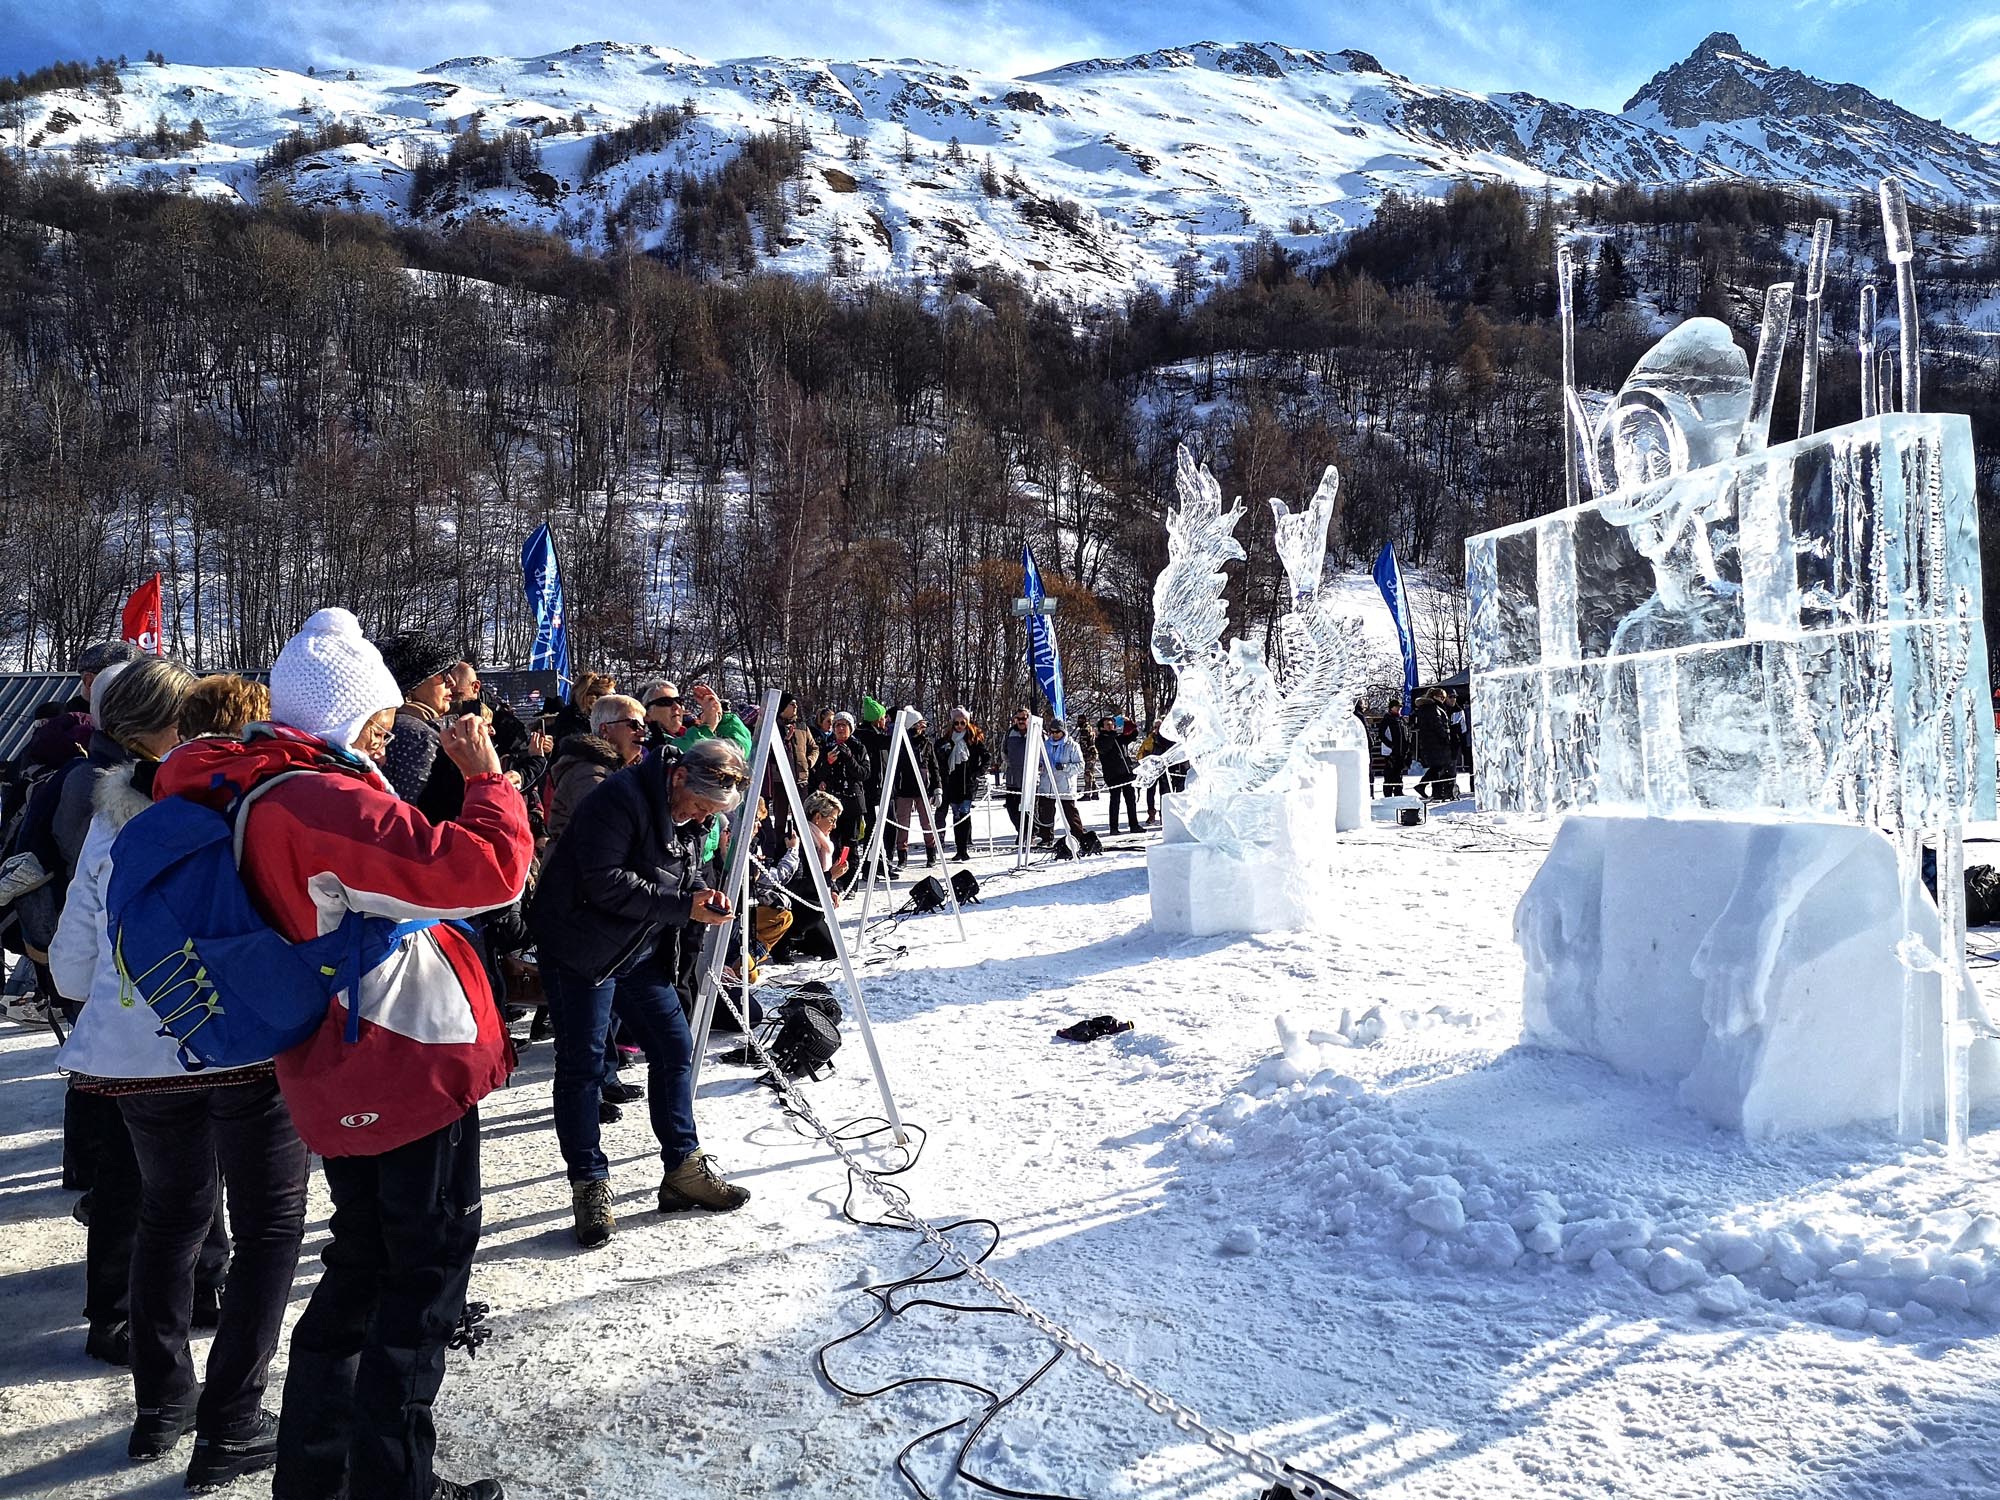 Valloire attire de nombreux touristes au cours de ses concours de sculpture sur glace et sur neige.